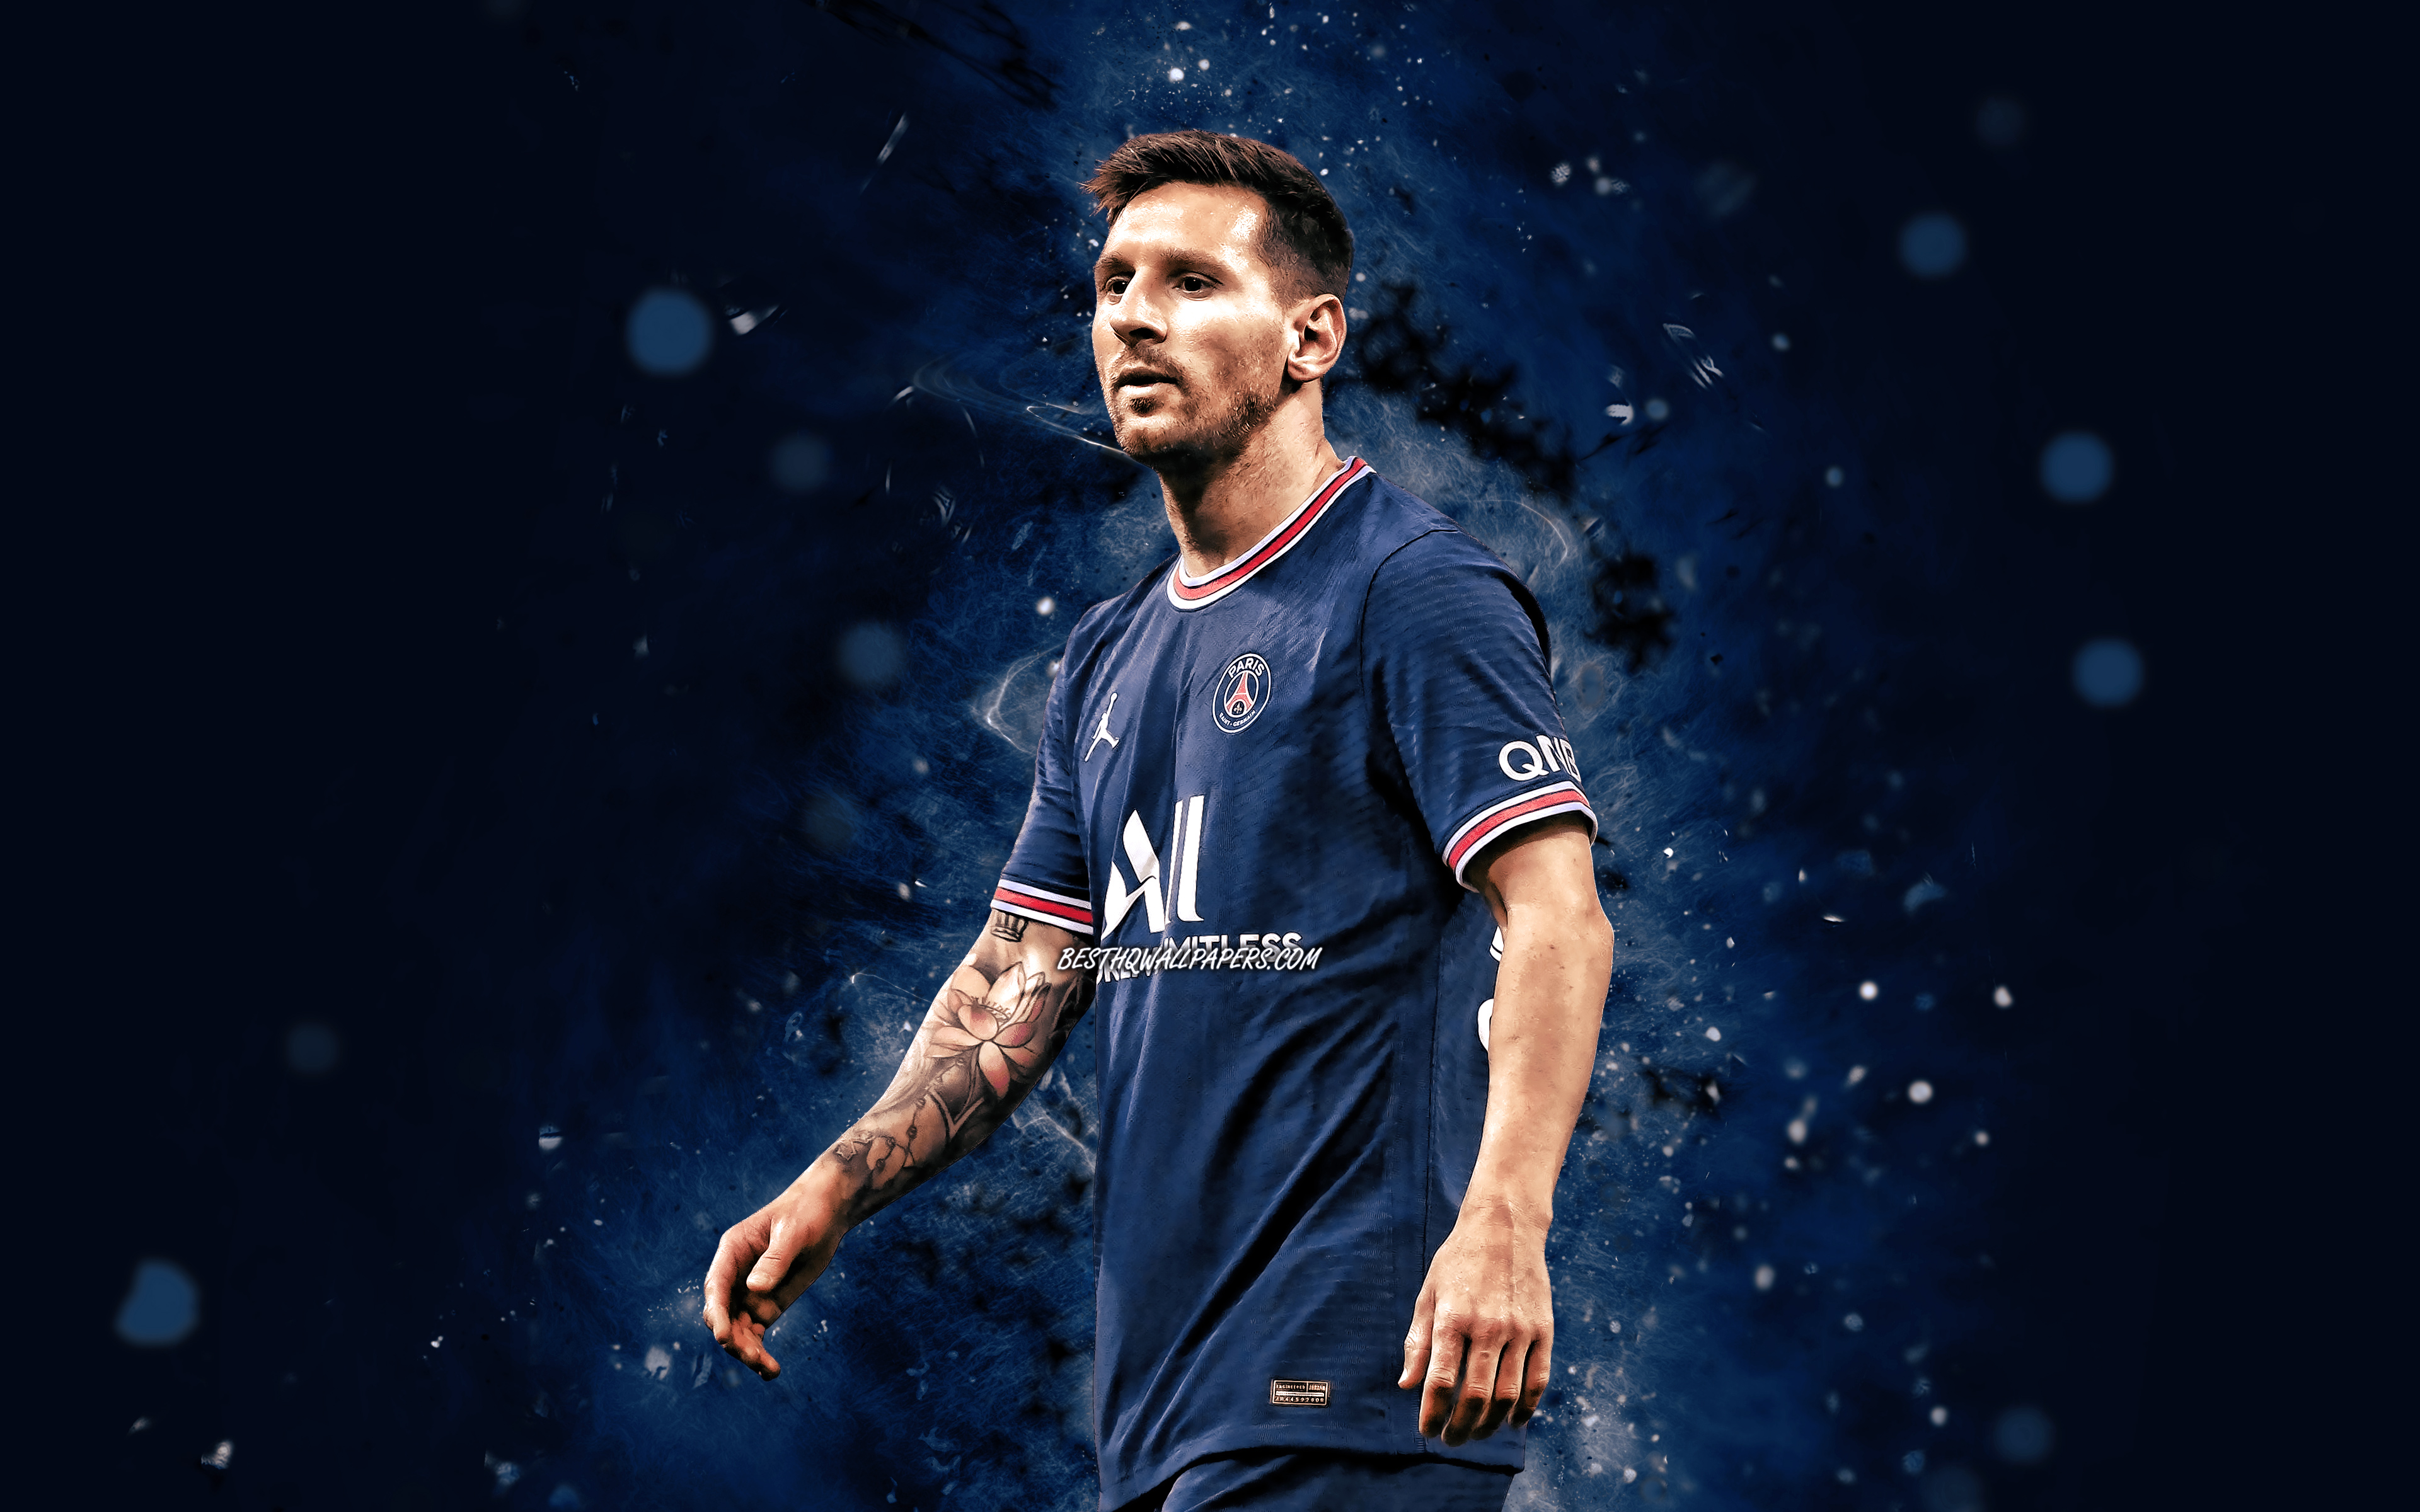 Đừng bỏ lỡ những bức ảnh Messi 4K hấp dẫn nhất trên mạng. Hãy thưởng thức những hình ảnh với độ phân giải 4K đầy sắc nét, mỗi chi tiết đều được thể hiện rõ ràng. Hãy cùng thưởng thức những bức ảnh Messi 4K đẹp nhất trên màn hình của bạn.